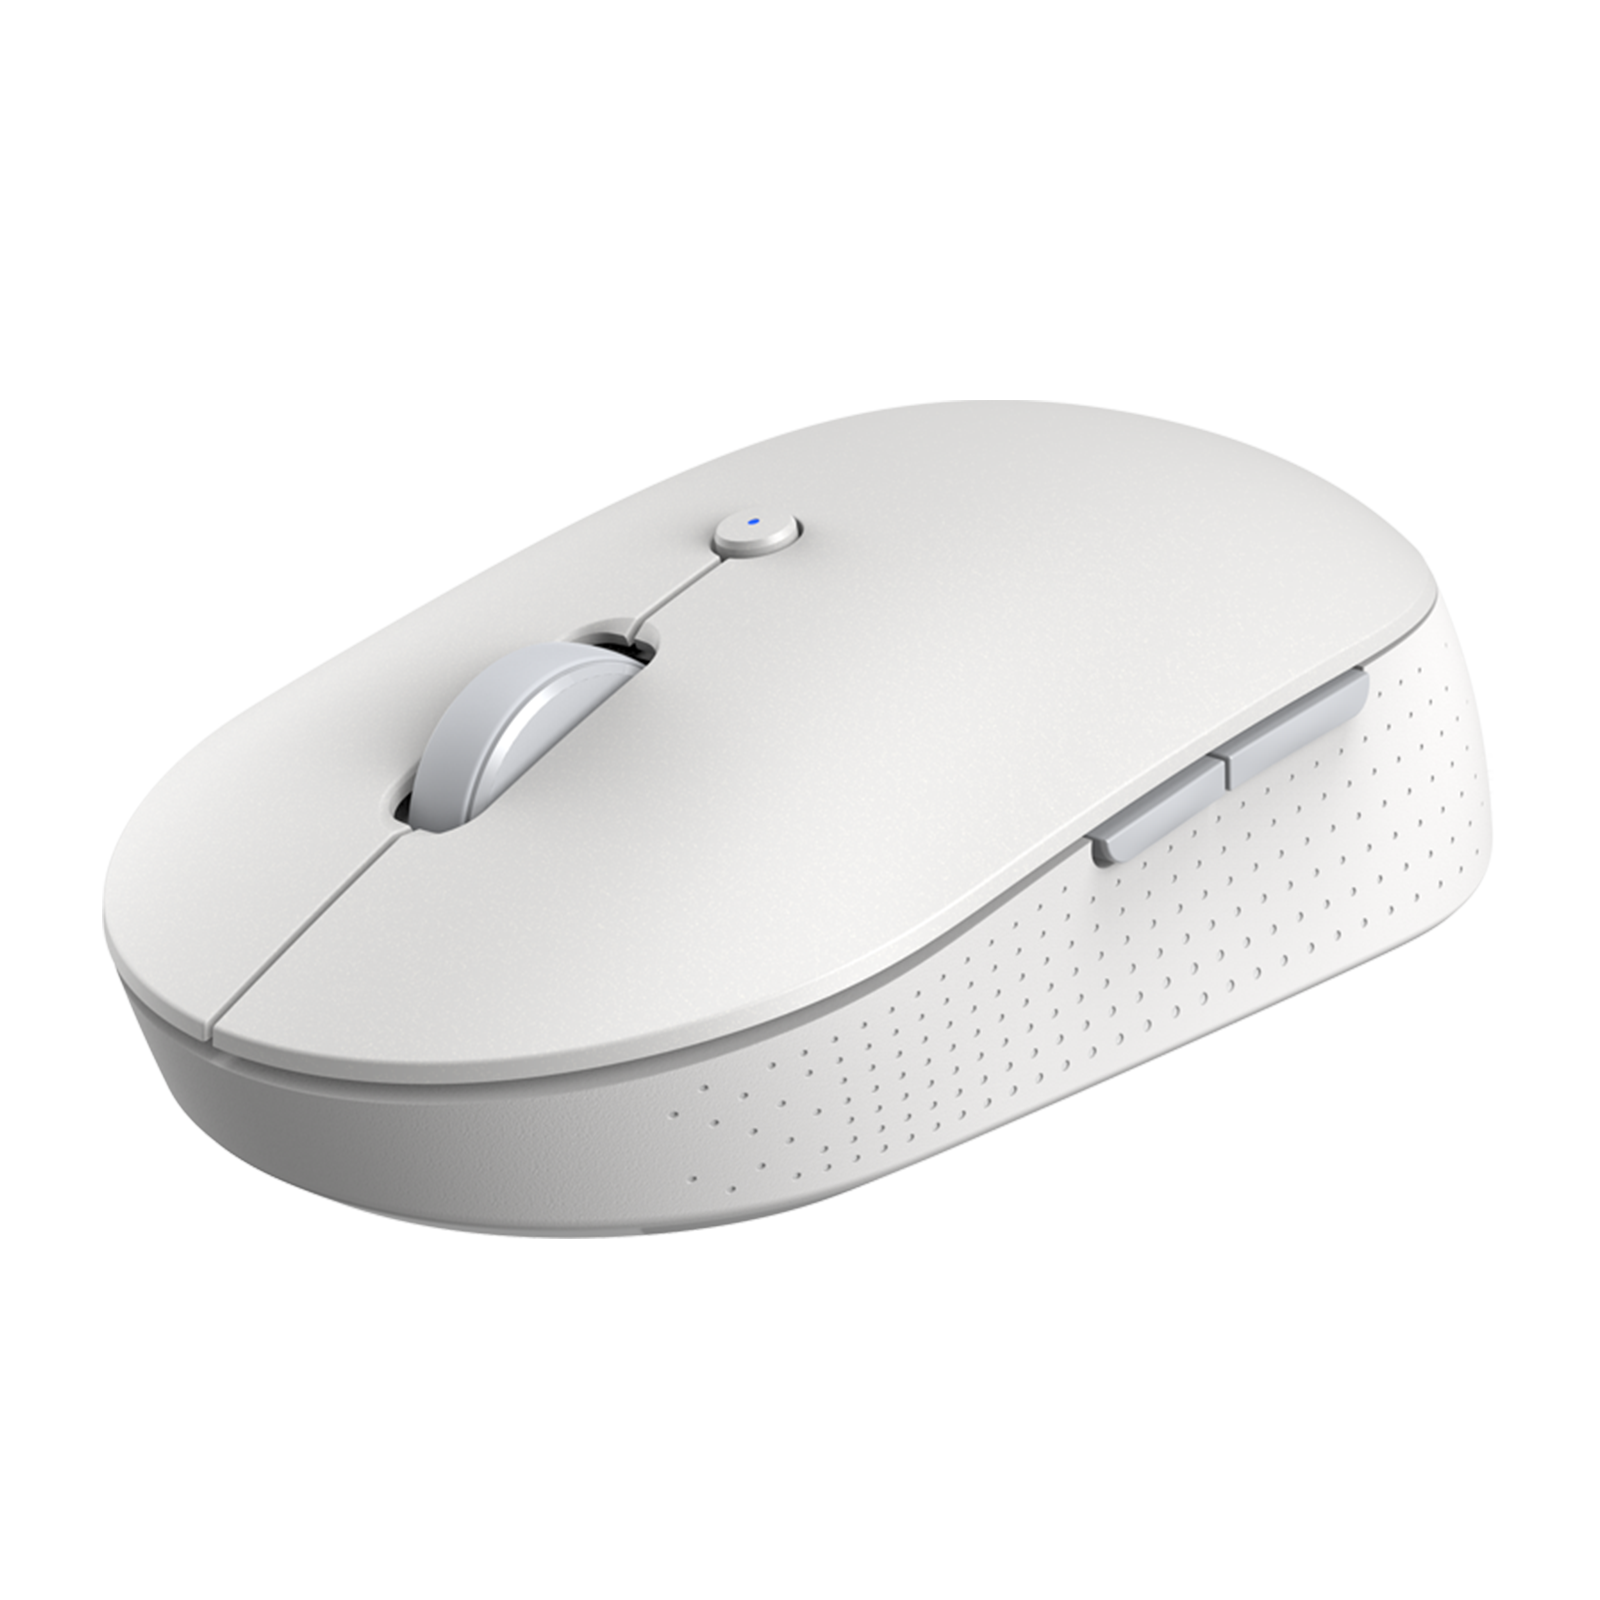 Mi Dual Mode Wireless Mouse White